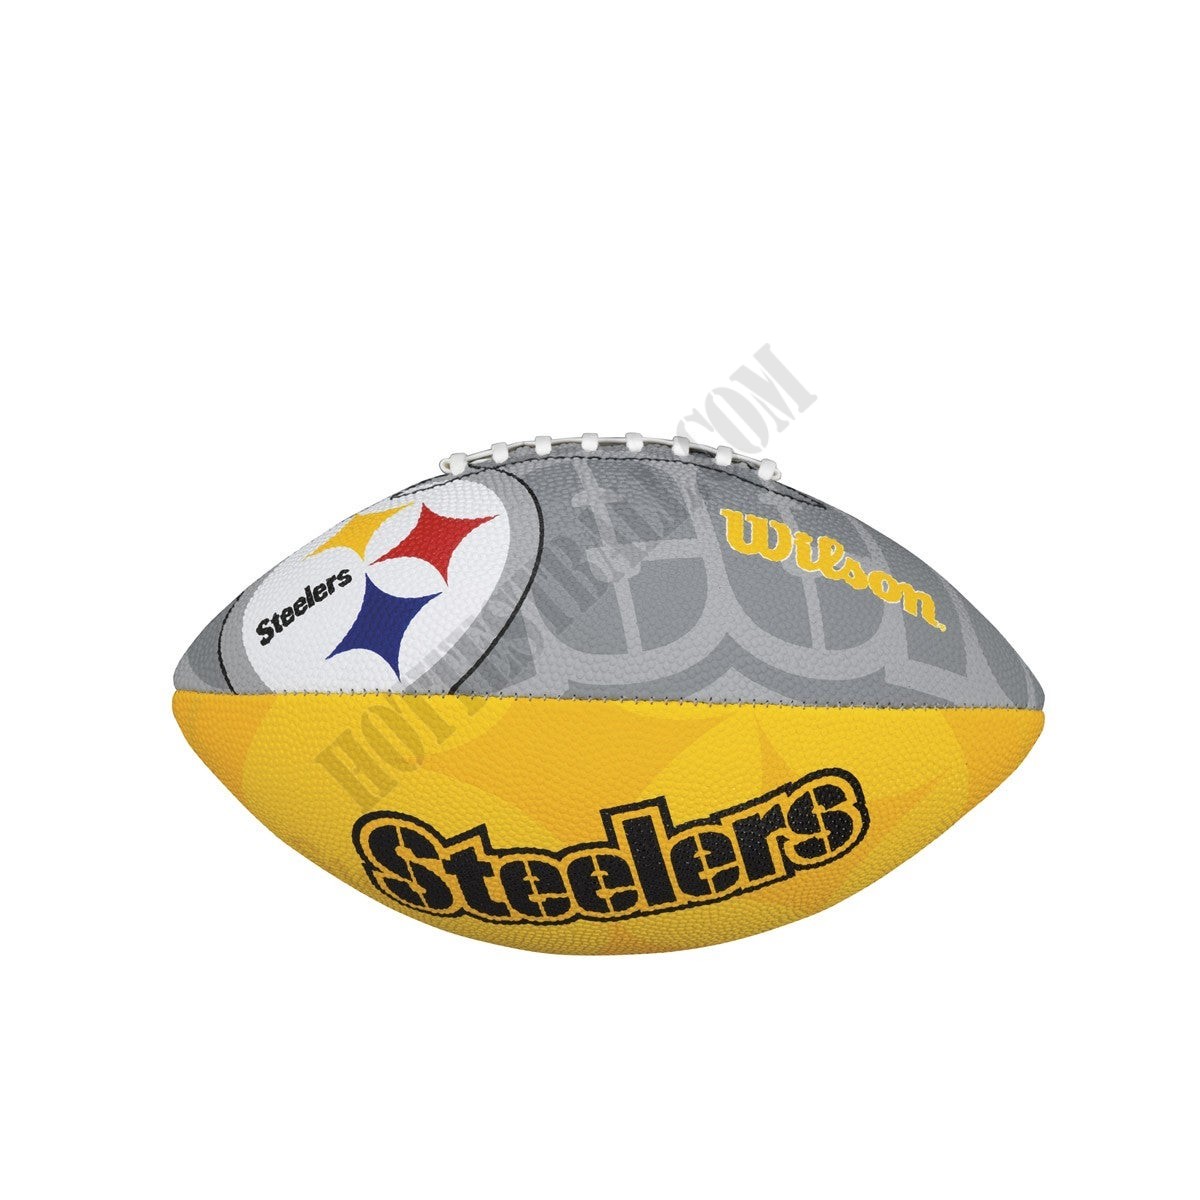 NFL Team Tailgate Football - Pittsburgh Steelers ● Wilson Promotions - NFL Team Tailgate Football - Pittsburgh Steelers ● Wilson Promotions